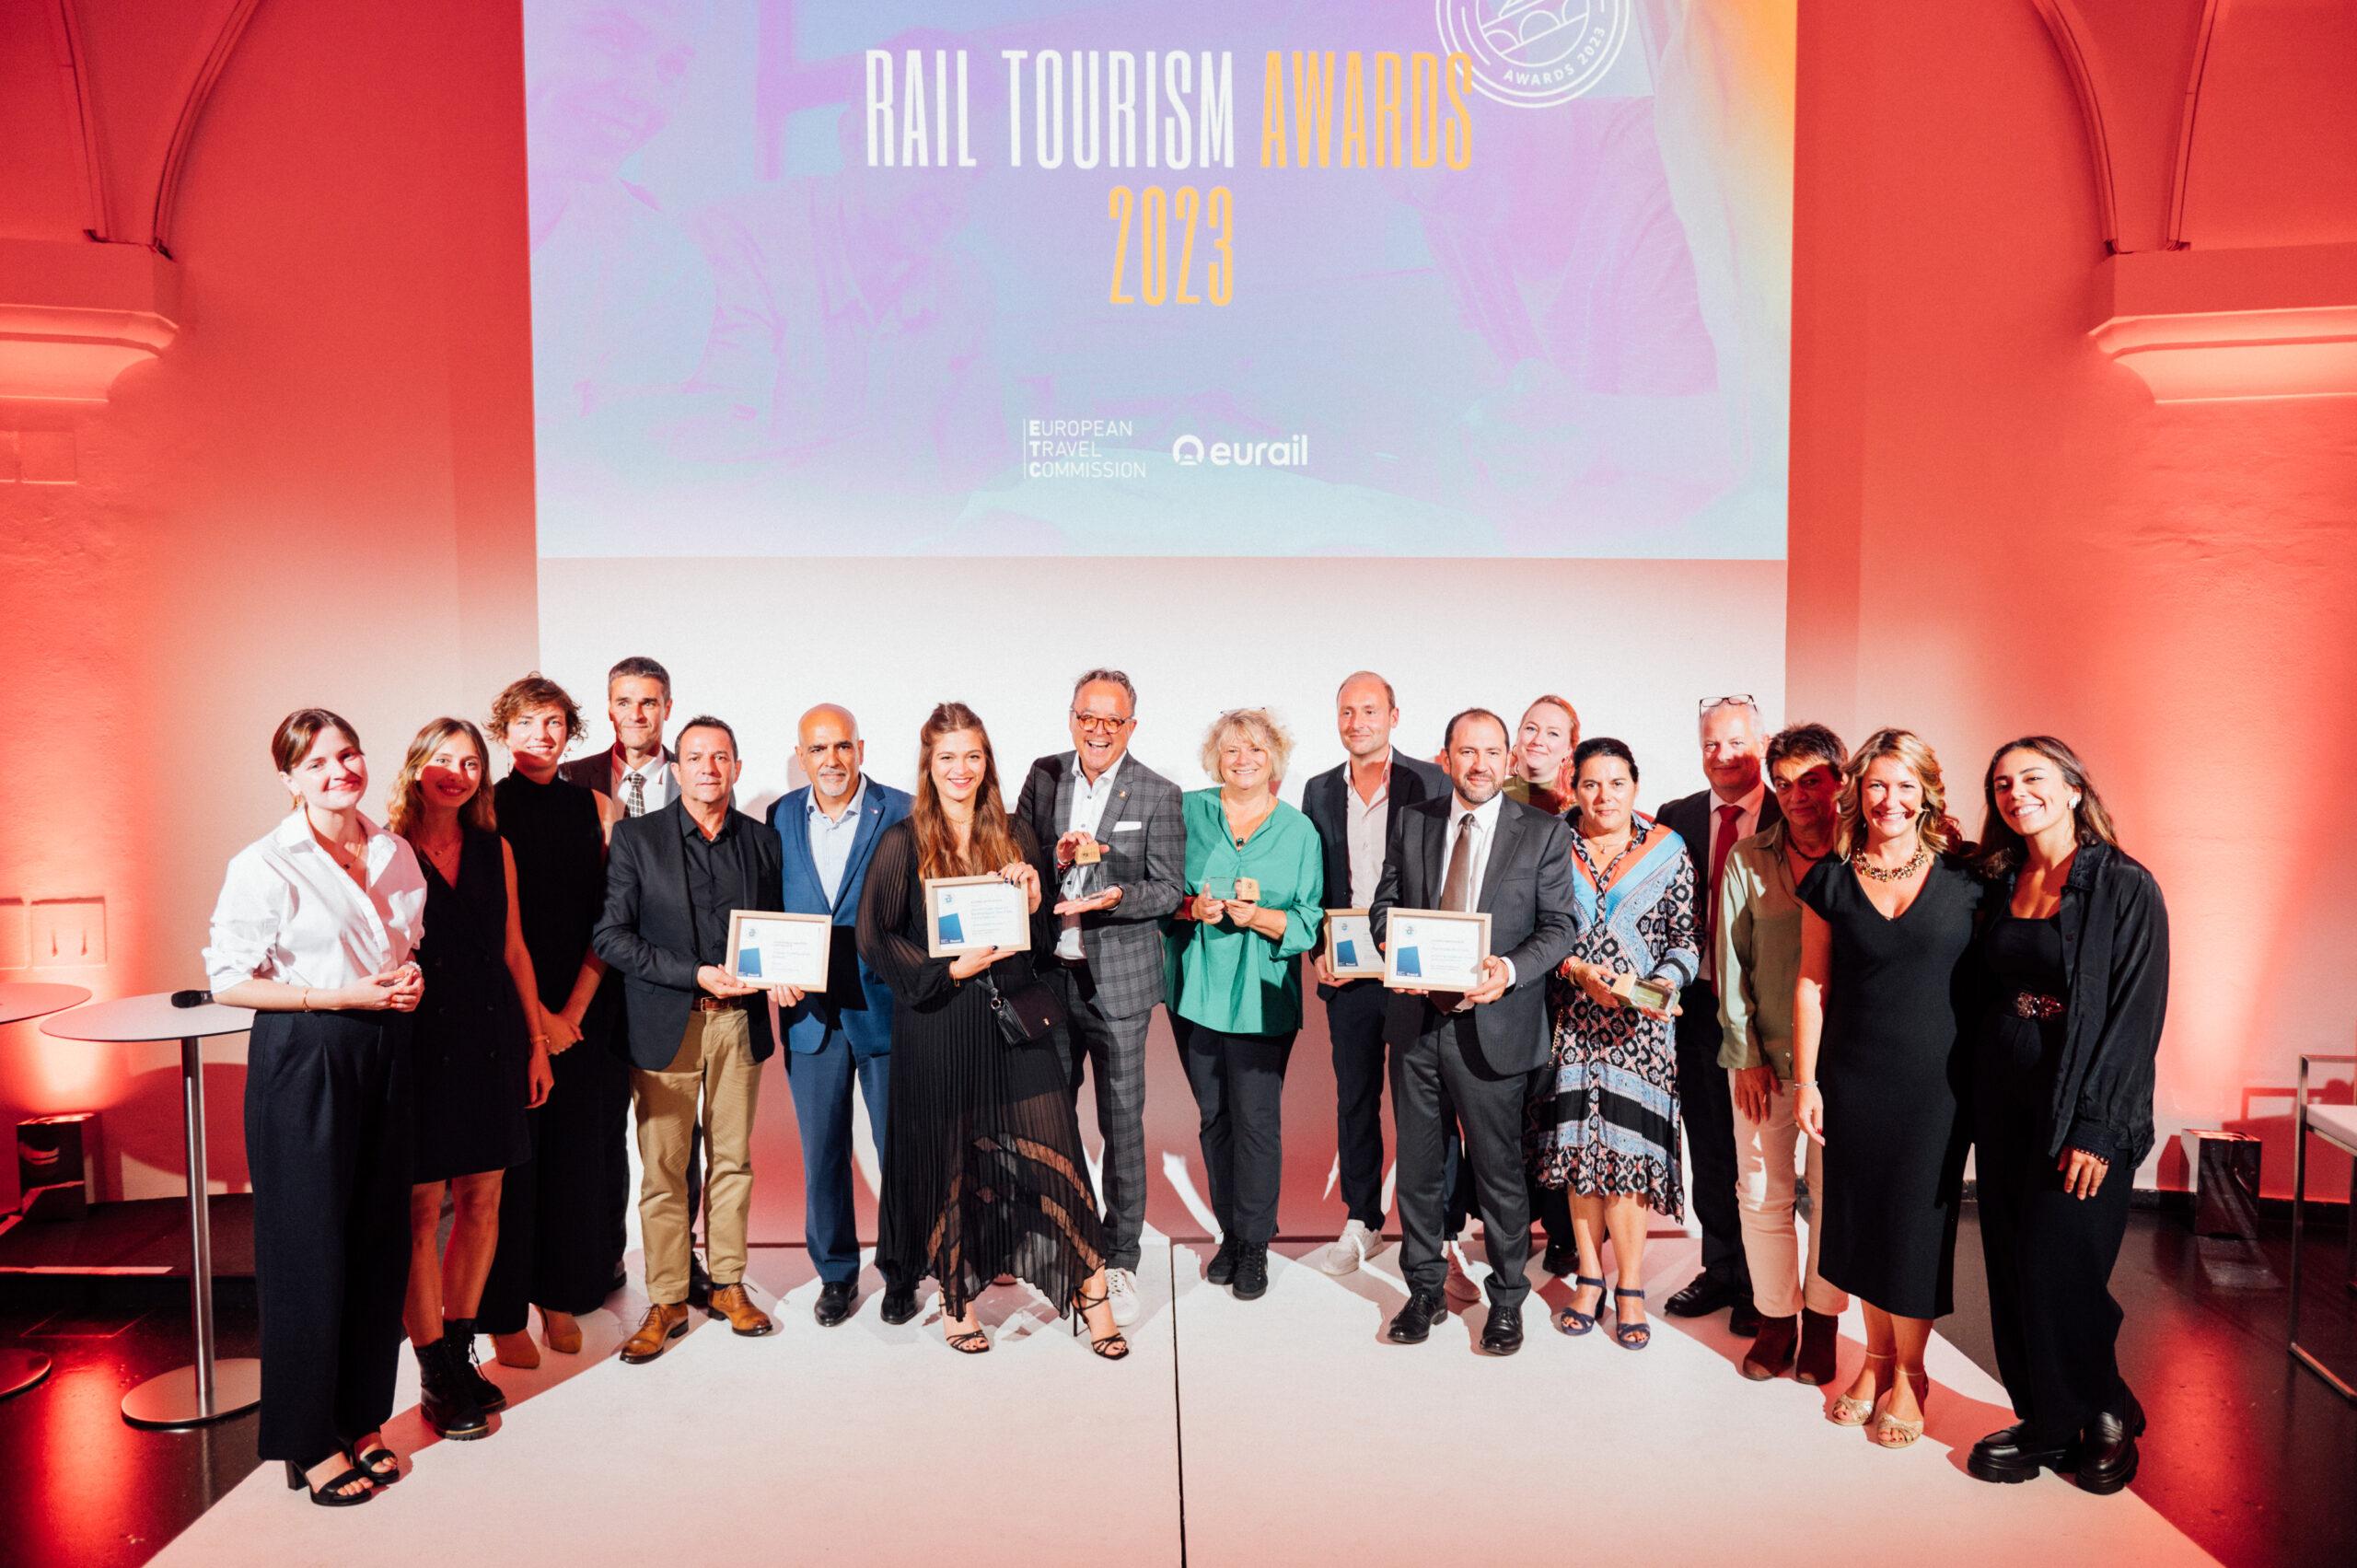 Algunos de los galardonados de la noche. Fuente: ‘Rail Tourism Awards’.